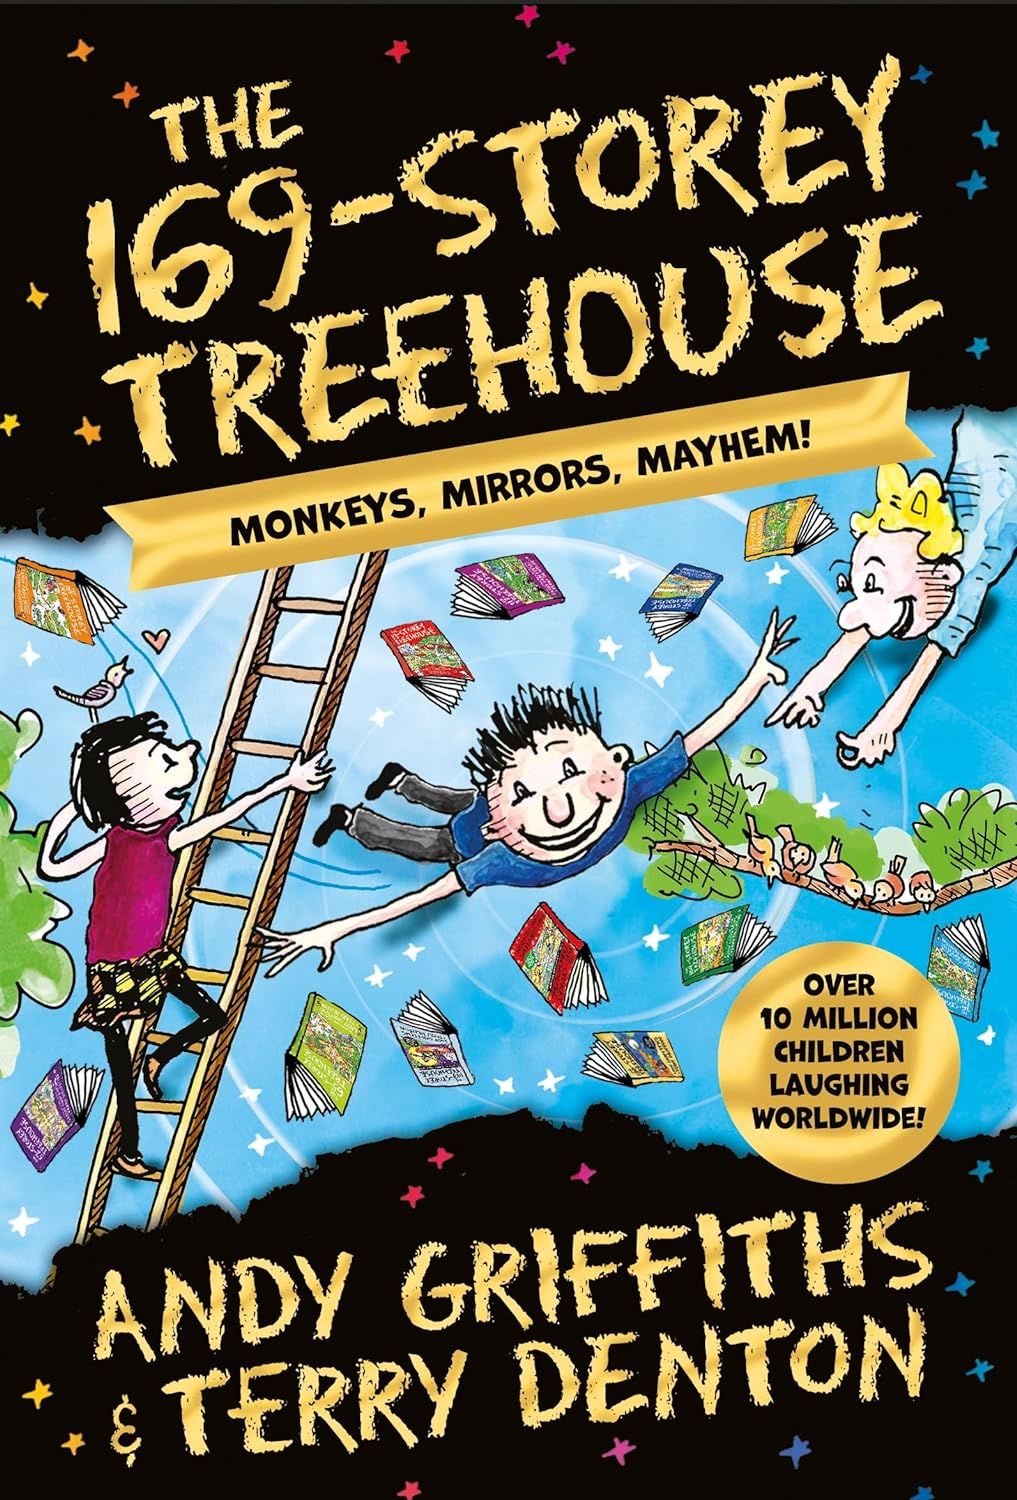 169-Storey Treehouse: Monkeys, Mirrors, Mayhem!